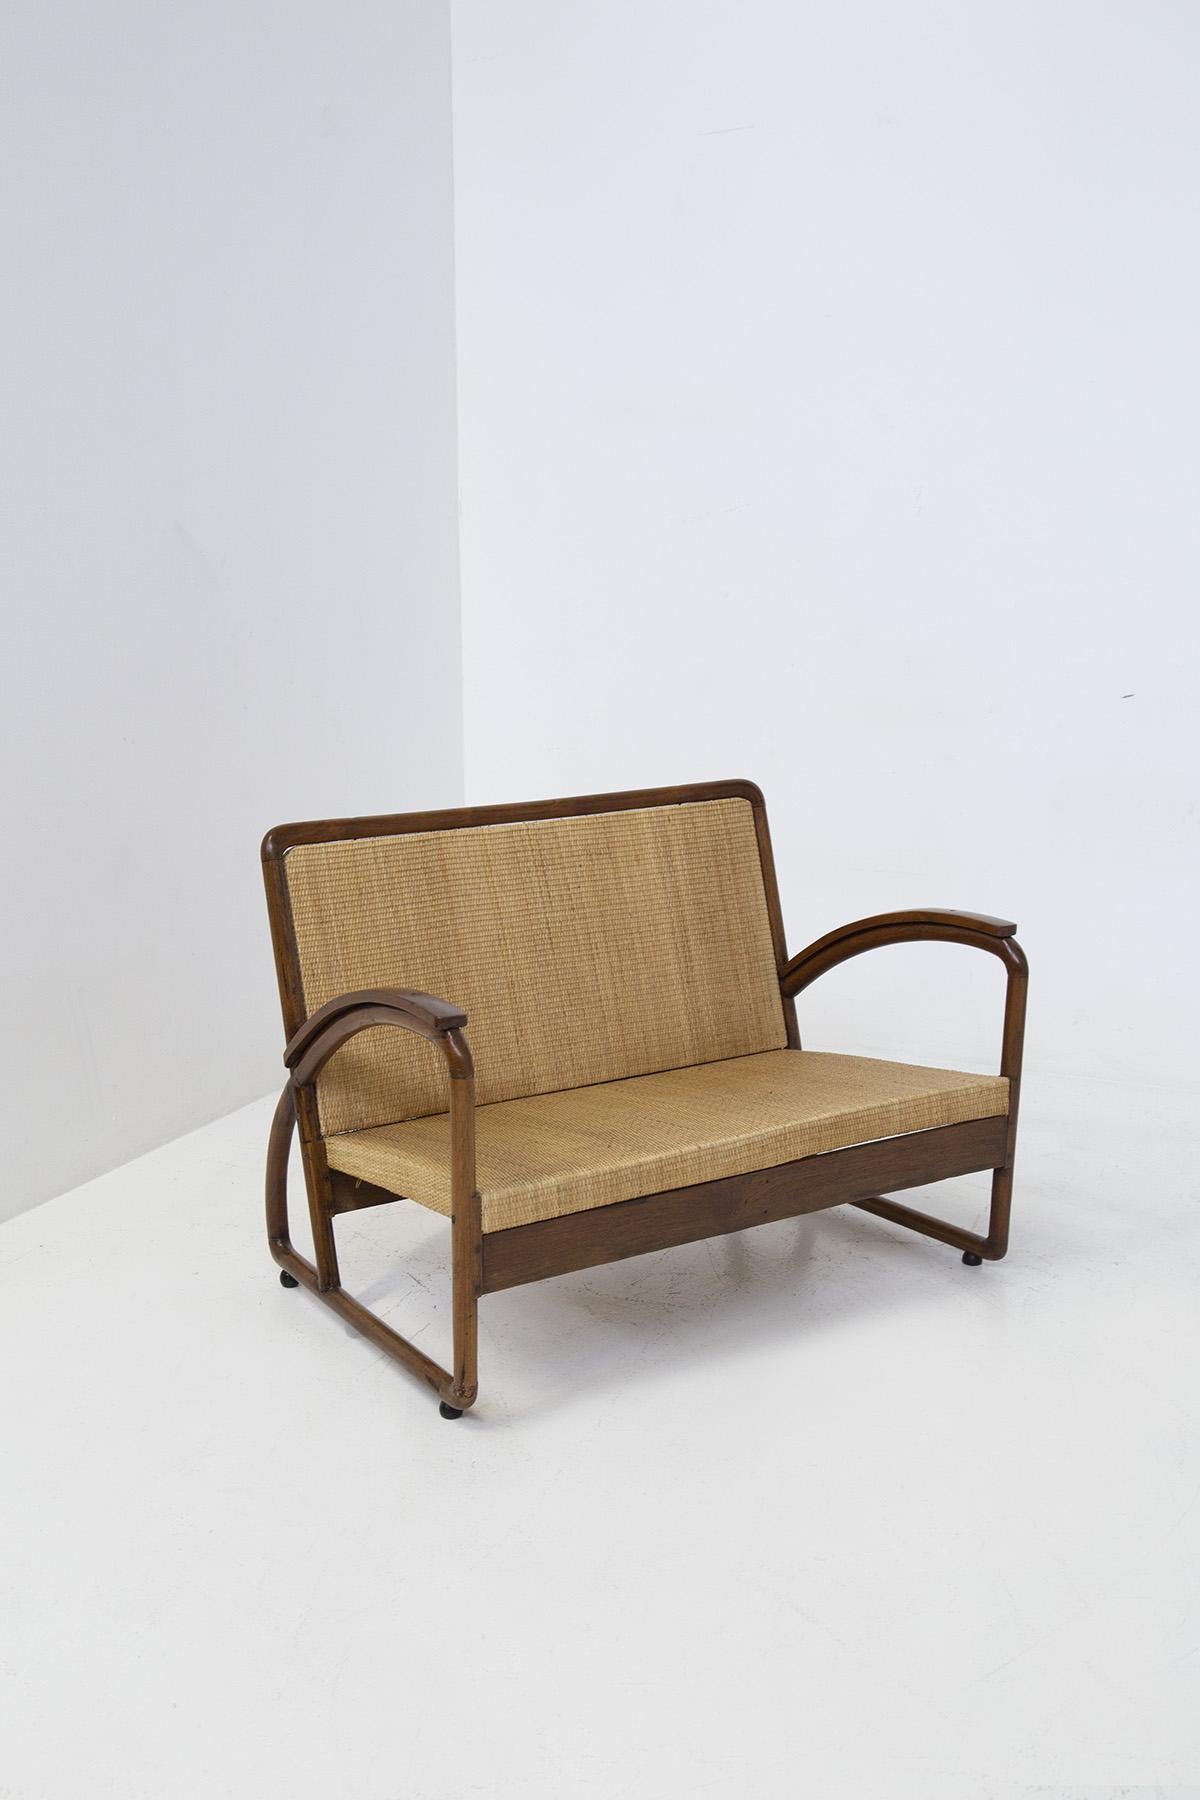 Schöner Liegesessel aus der Zeit des italienischen Rationalismus der 1920er Jahre.
Der Sessel wurde aus edlem Holz für den Rahmen und Rattan für Sitz und Rückenlehne gefertigt. 
Seine kühnen, scharfen und umhüllenden Formen sind genau der